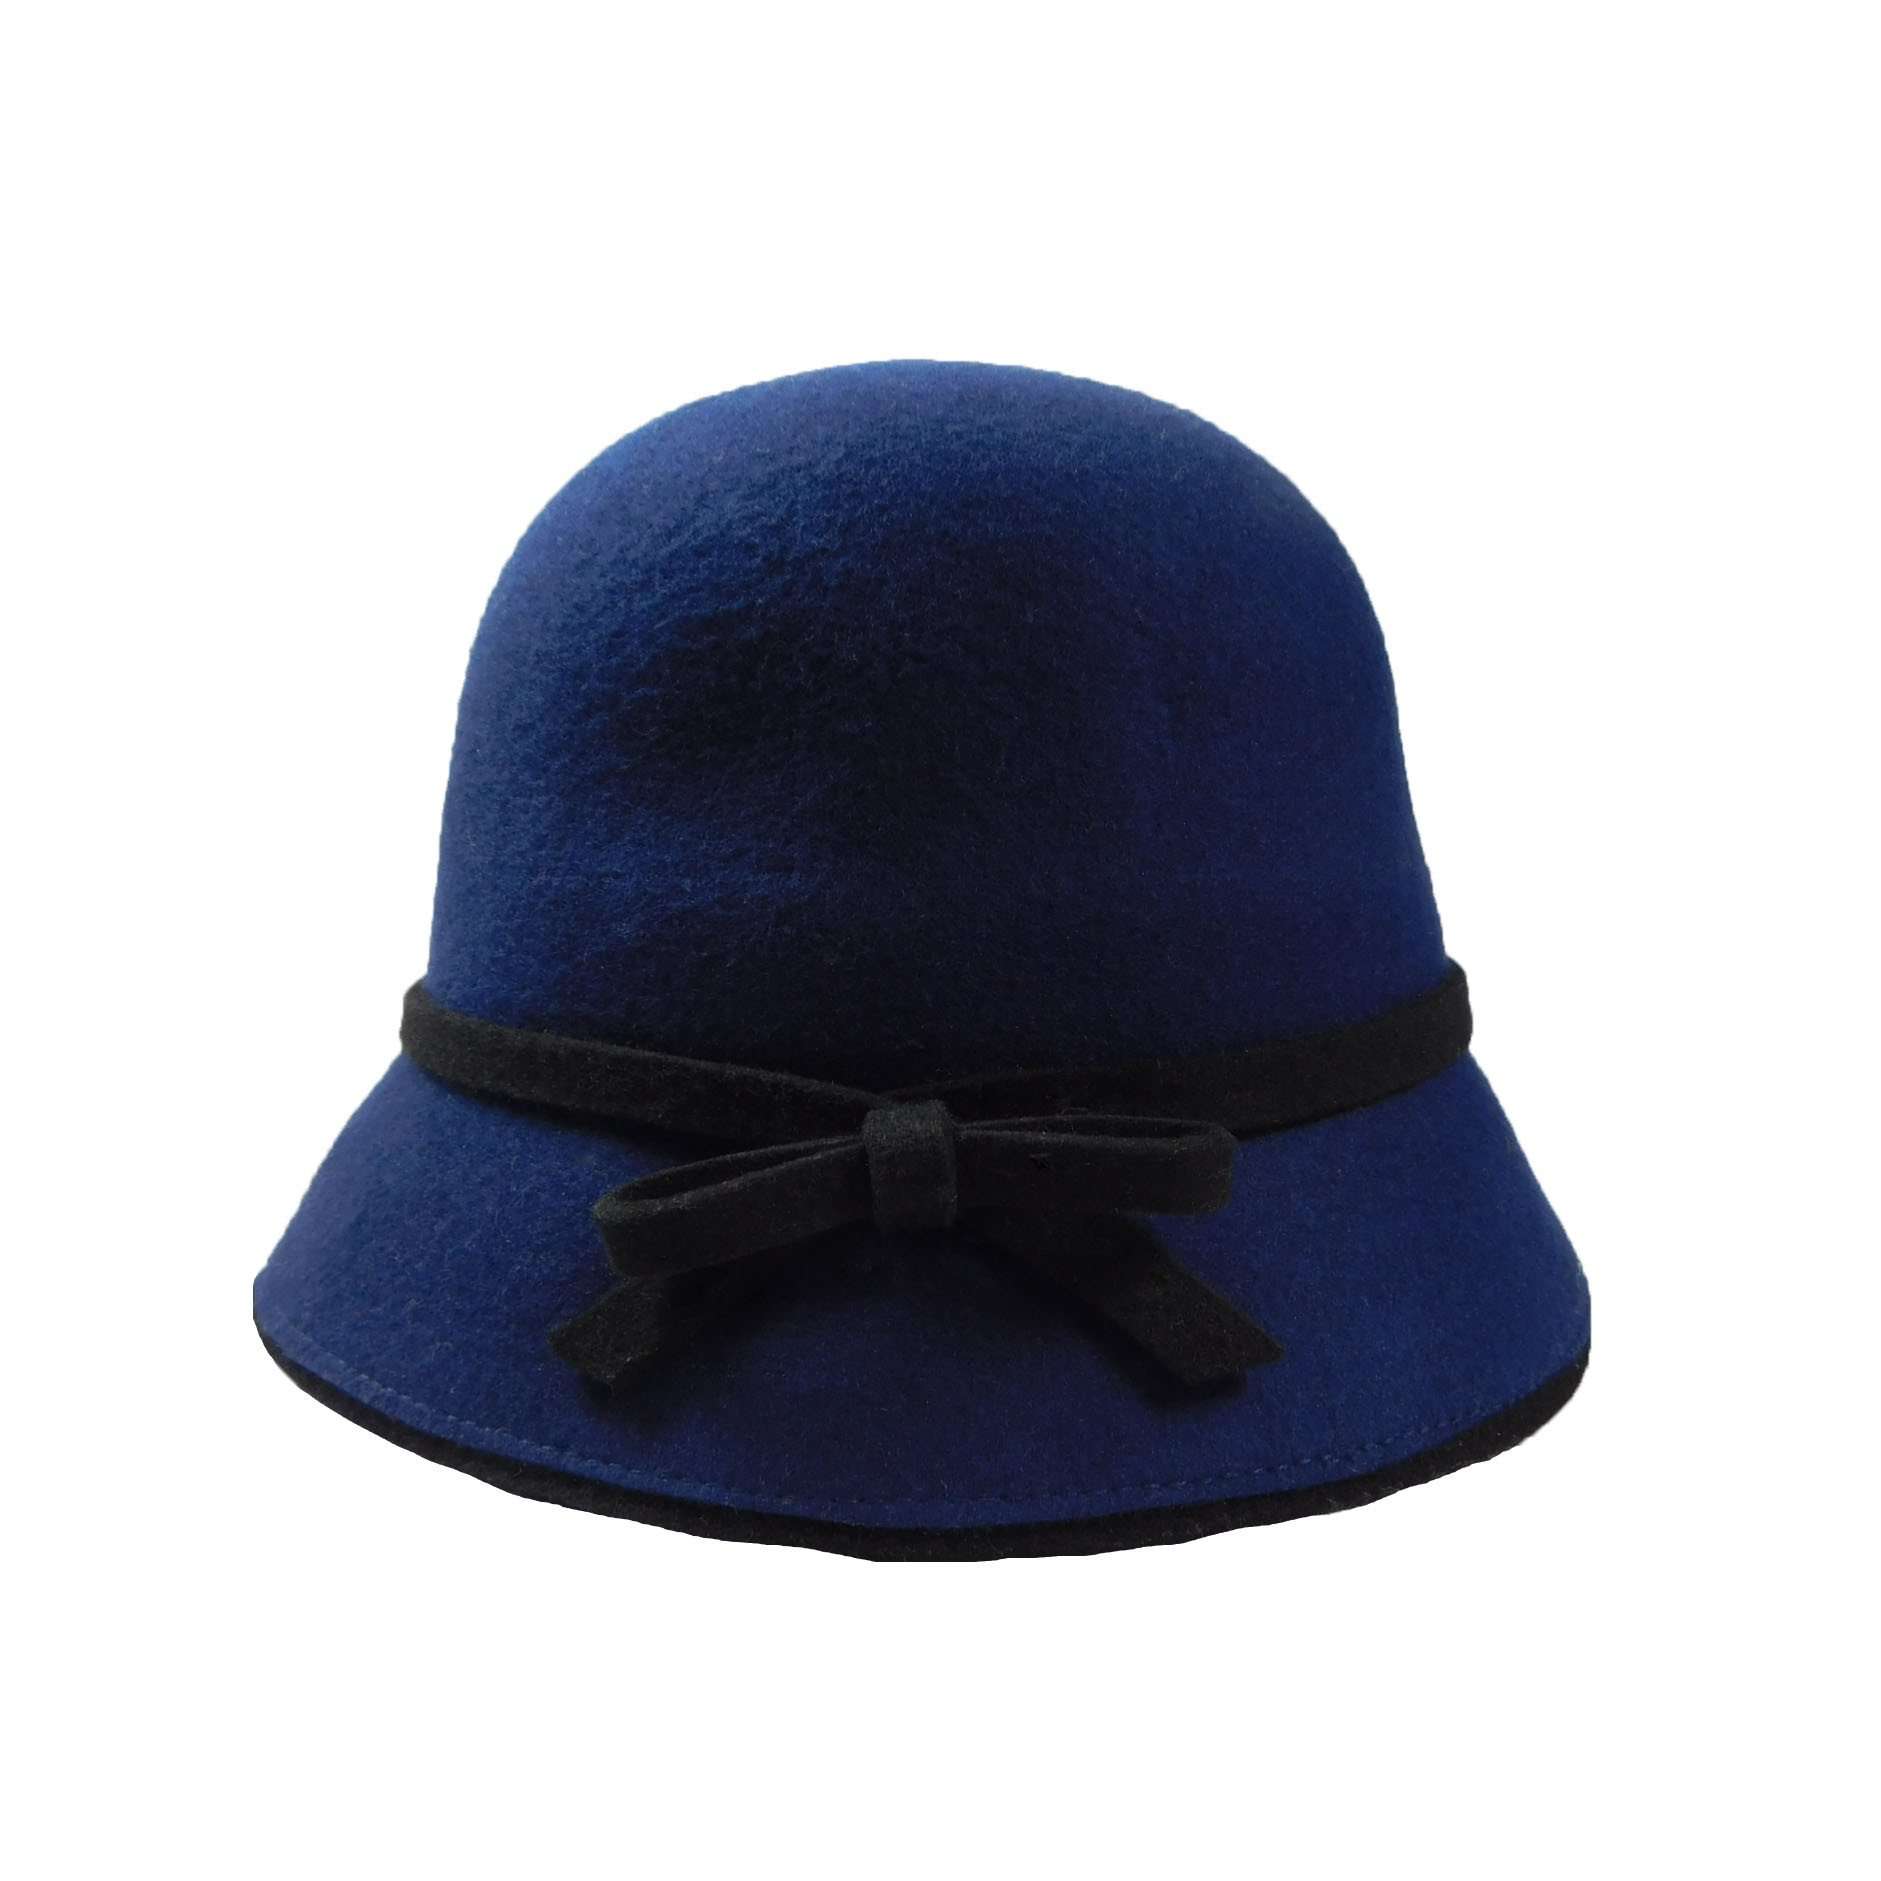 Wool Felt Cloche/Bucket Hat Cloche Jeanne Simmons WWWF182NV Navy  